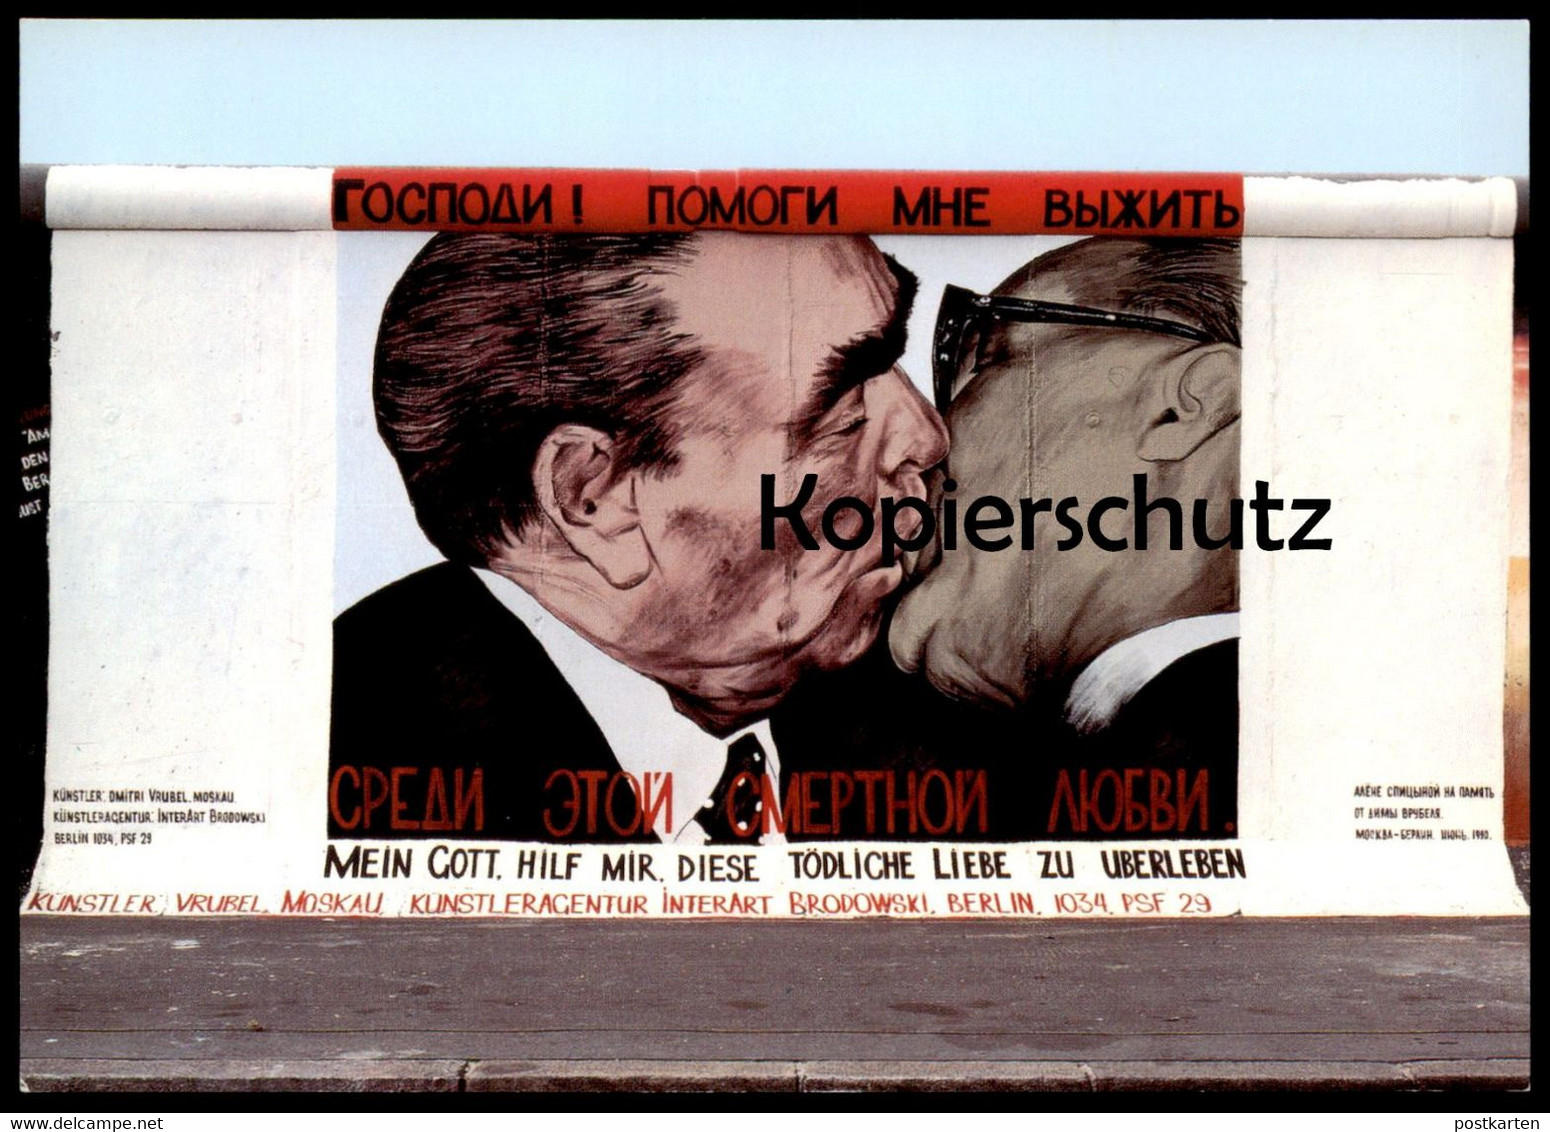 ÄLTERE POSTKARTE BERLIN DMITRI VRUBEL MEIN GOTT HILF MIR DIESE TÖDLICHE LIEBE ZU ÜBERLEBEN BRUDERKUSS HONECKER BRESCHNEW - Berlin Wall